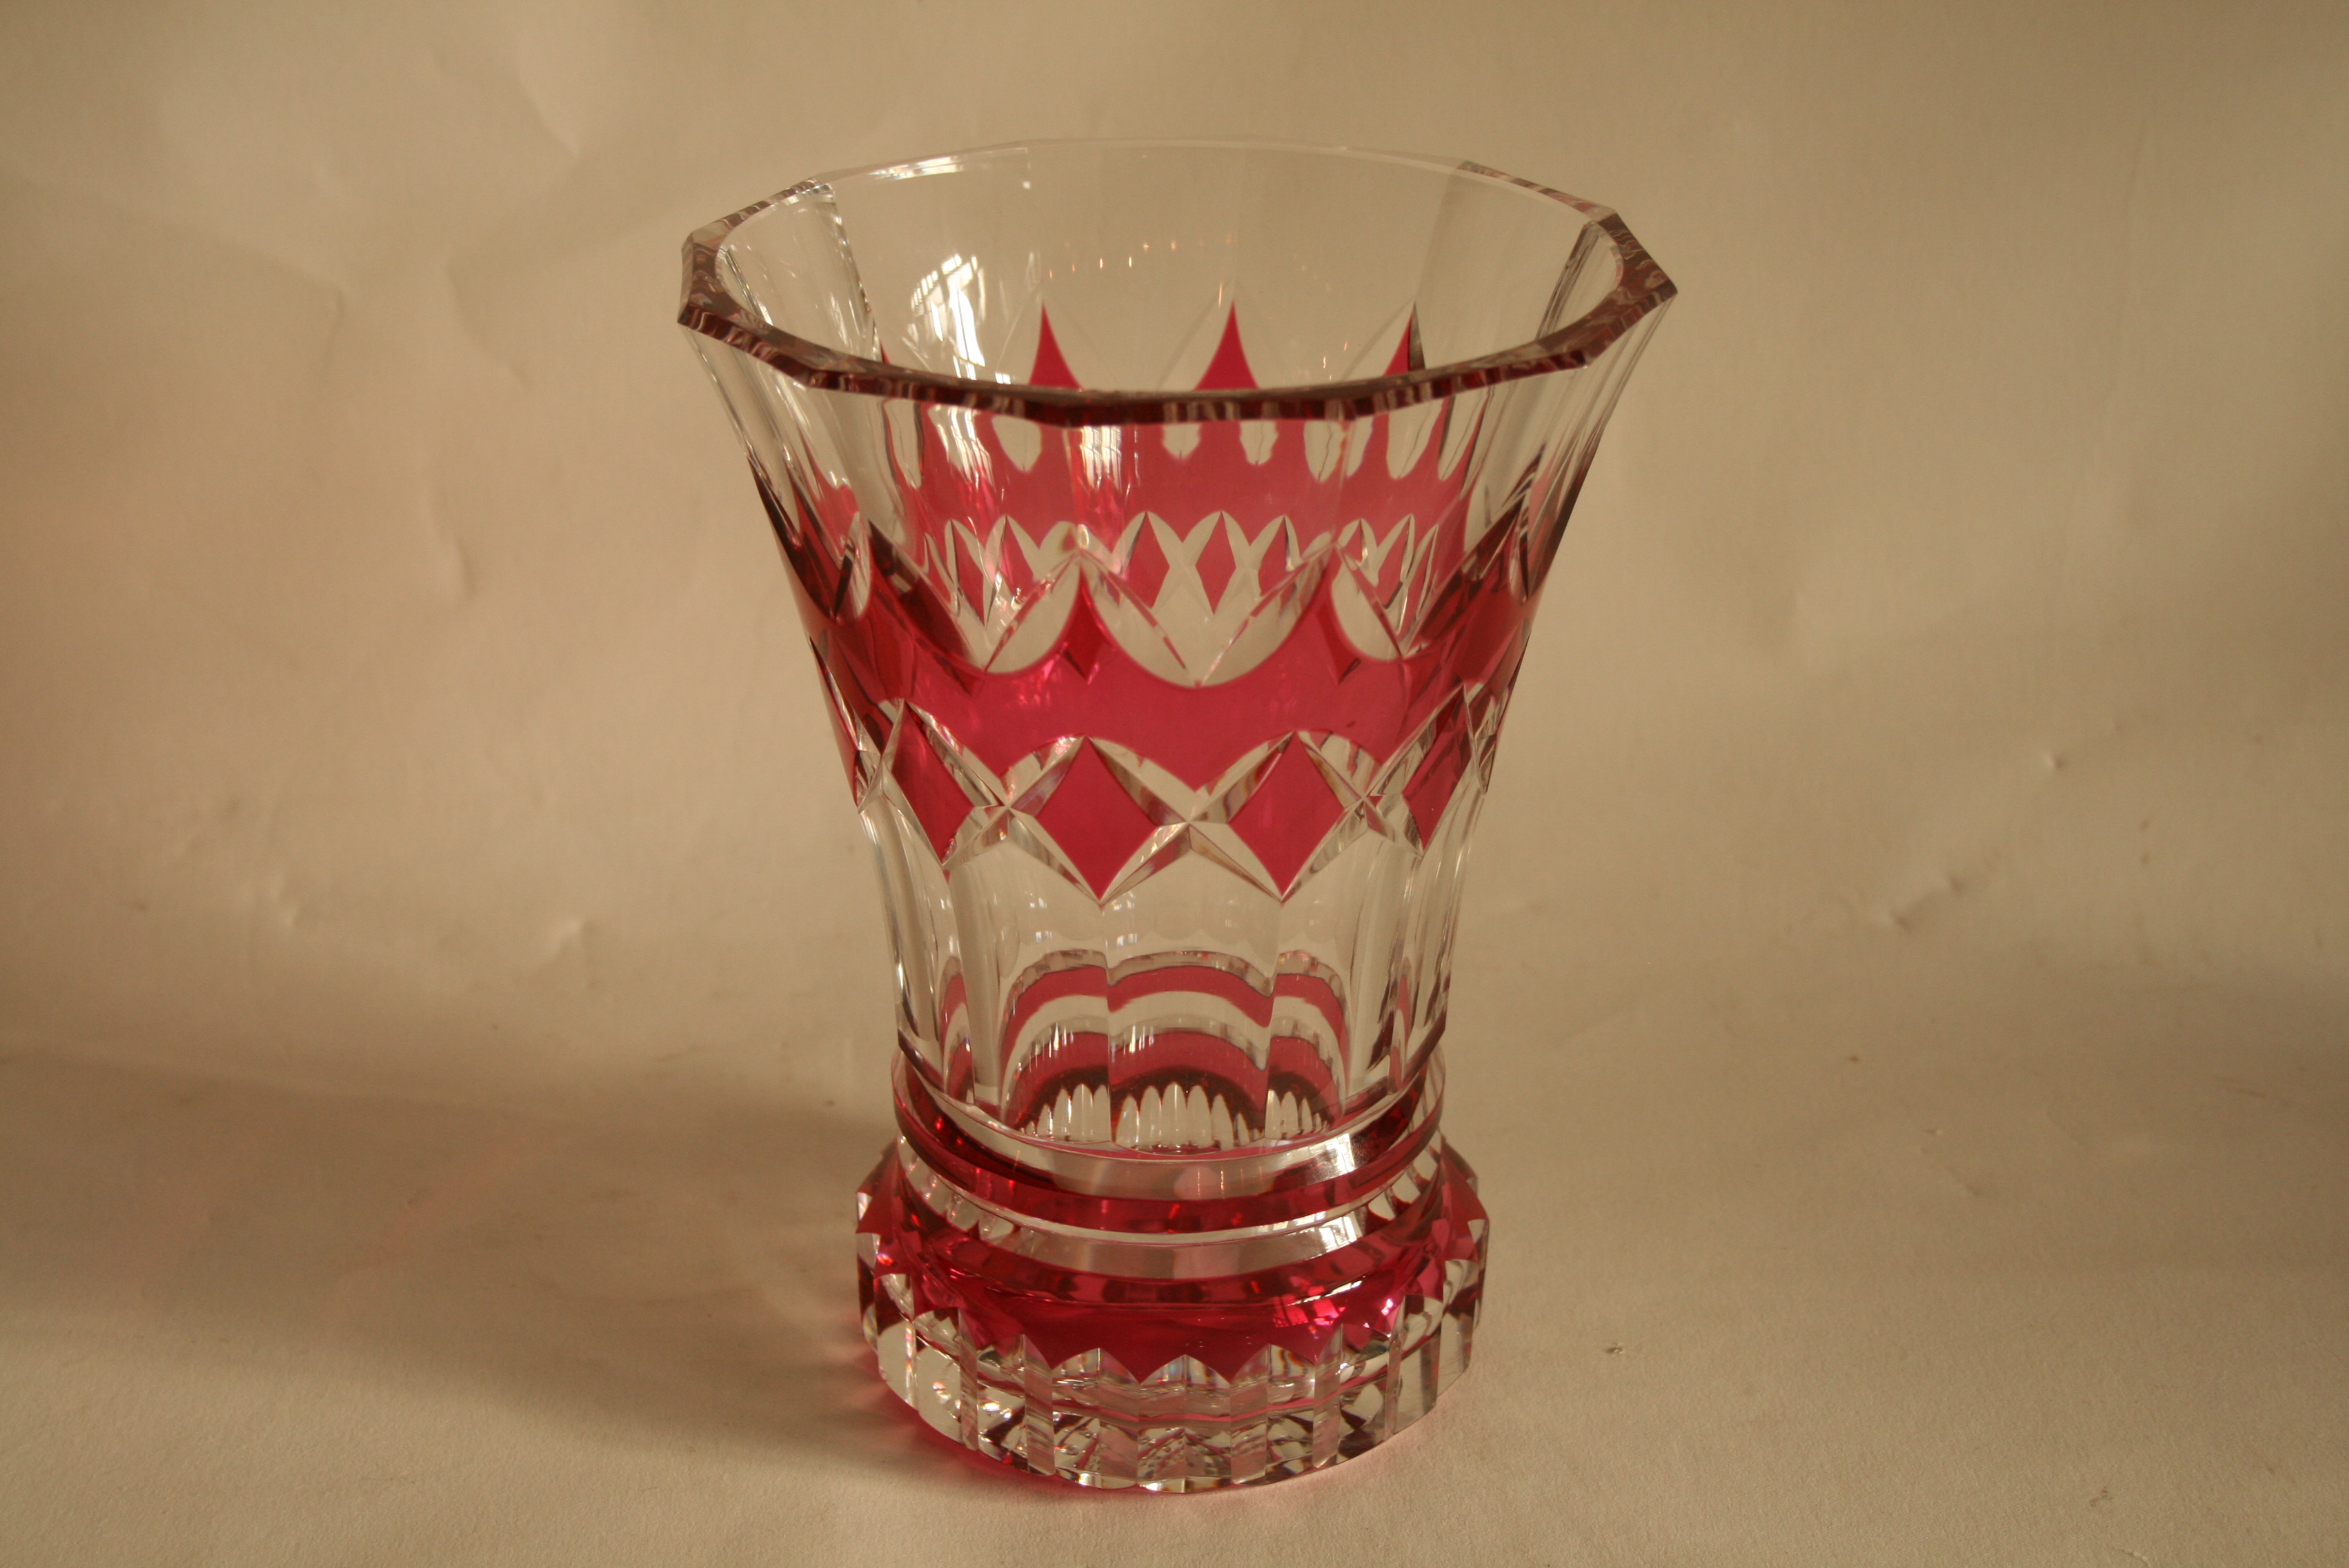 Vase de la cristallerie VAL SAINT LAMBERT, signé, années 70 - Hauteur : 21 cm, [...] - Image 2 of 2